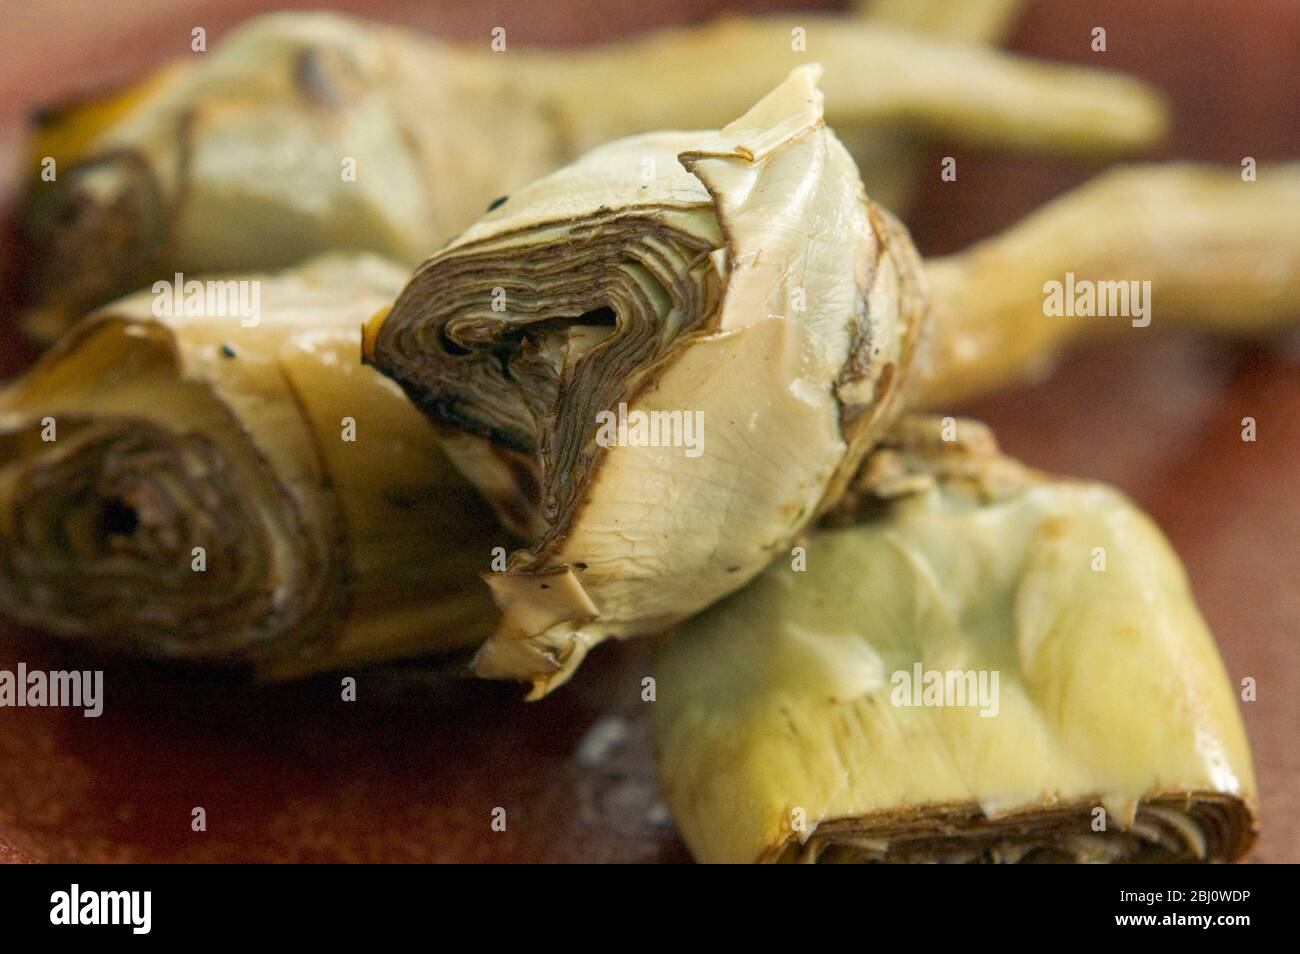 Italienische gegrillte und marinierte Artischocken auf braunem Gericht - Stockfoto